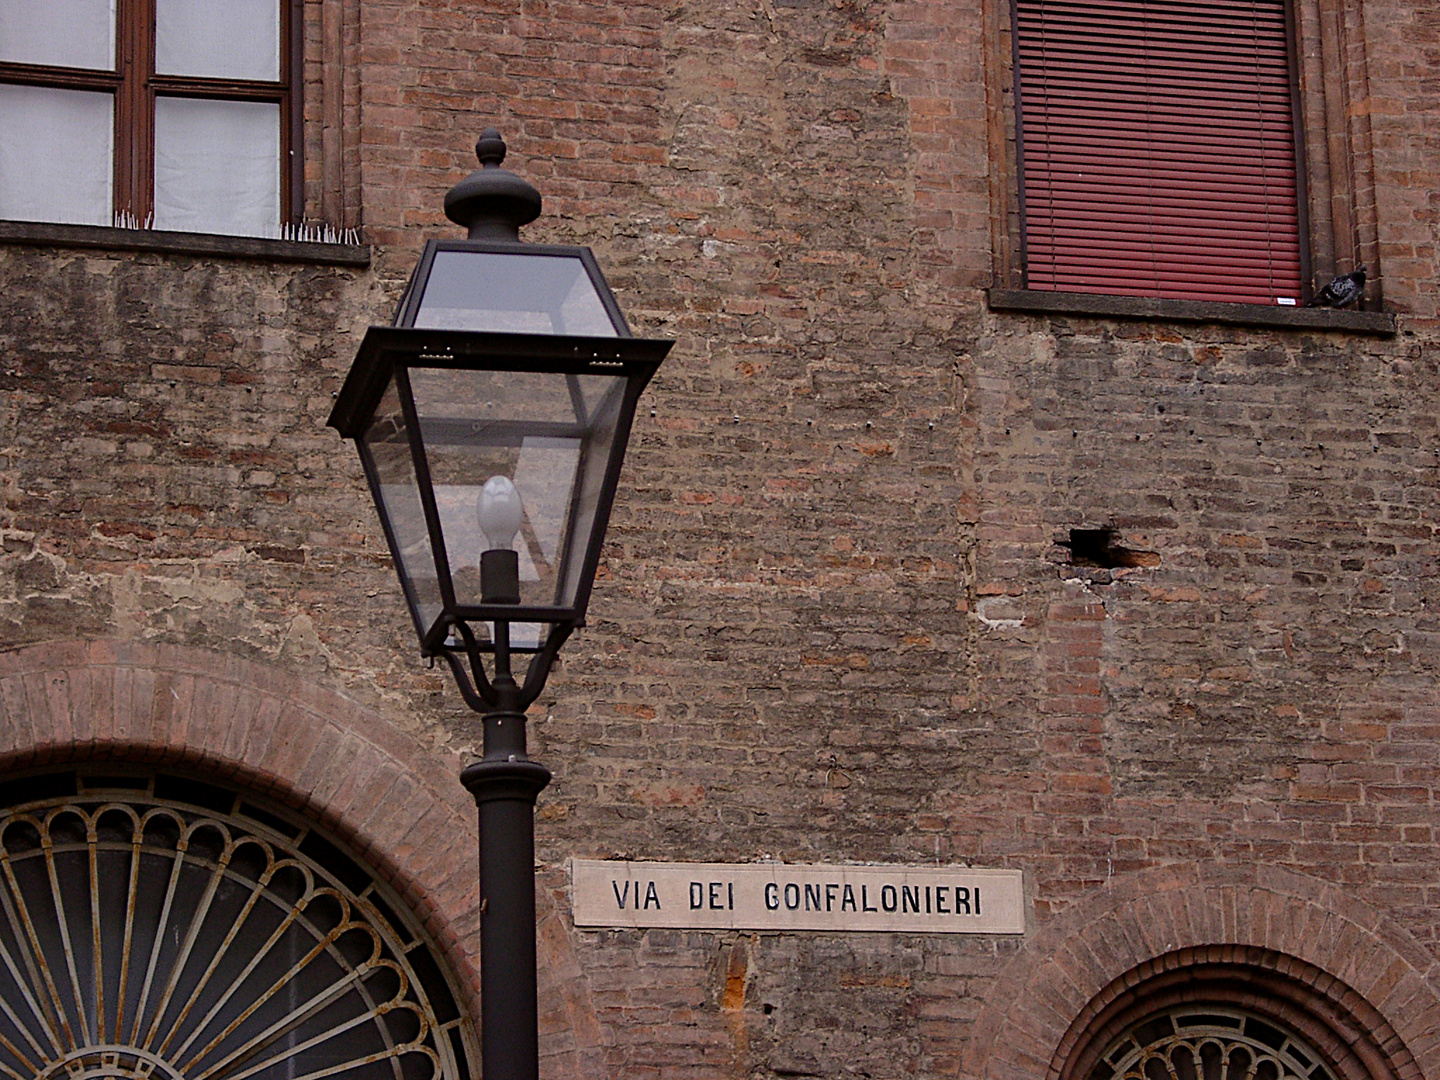 Cremona